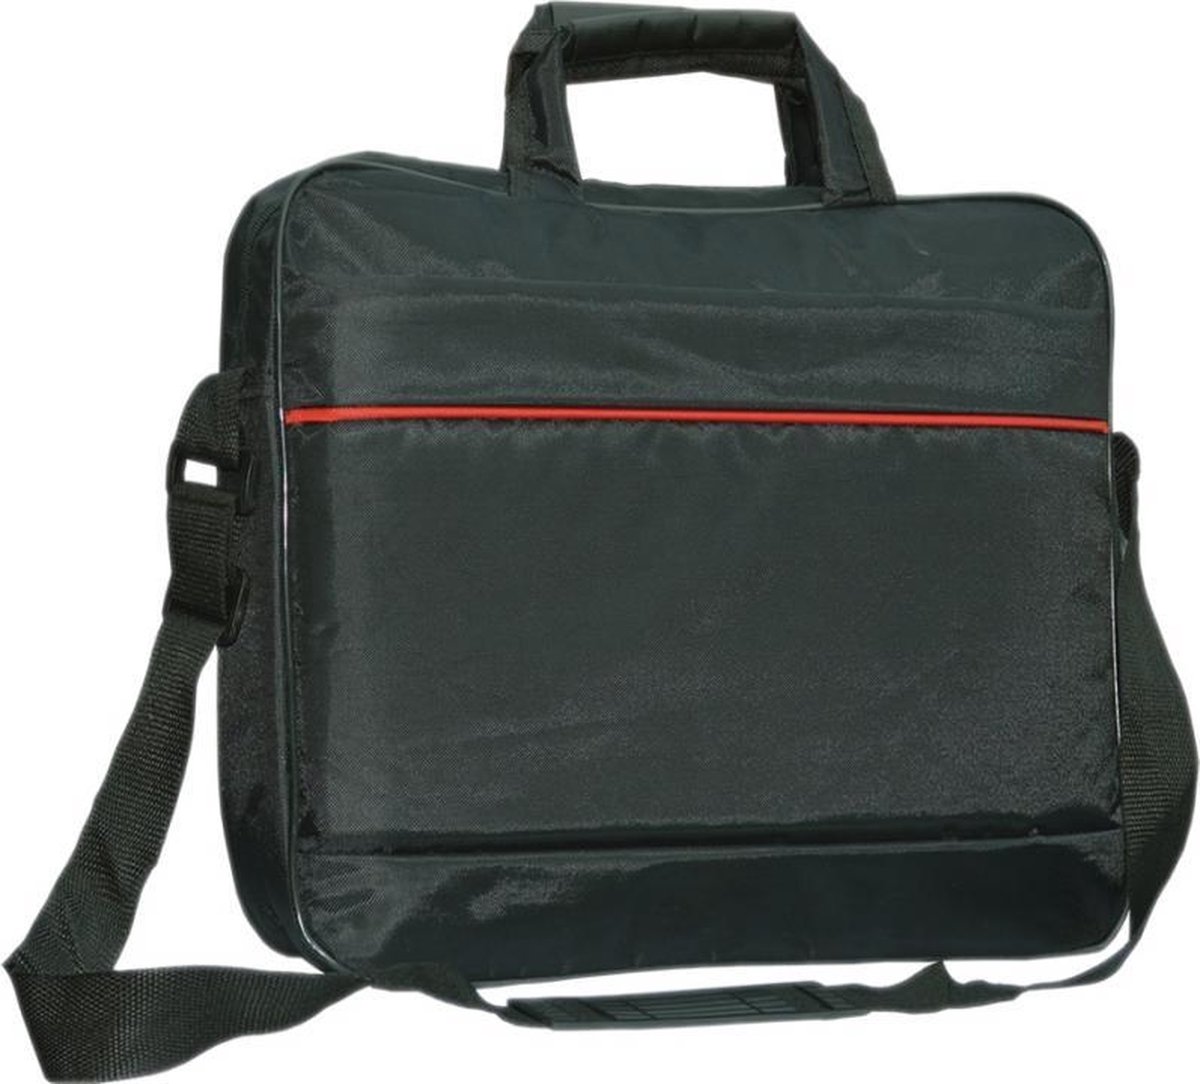 Asus Zenbook Ux303la laptoptas messenger bag / schoudertas / tas , zwart , merk i12Cover